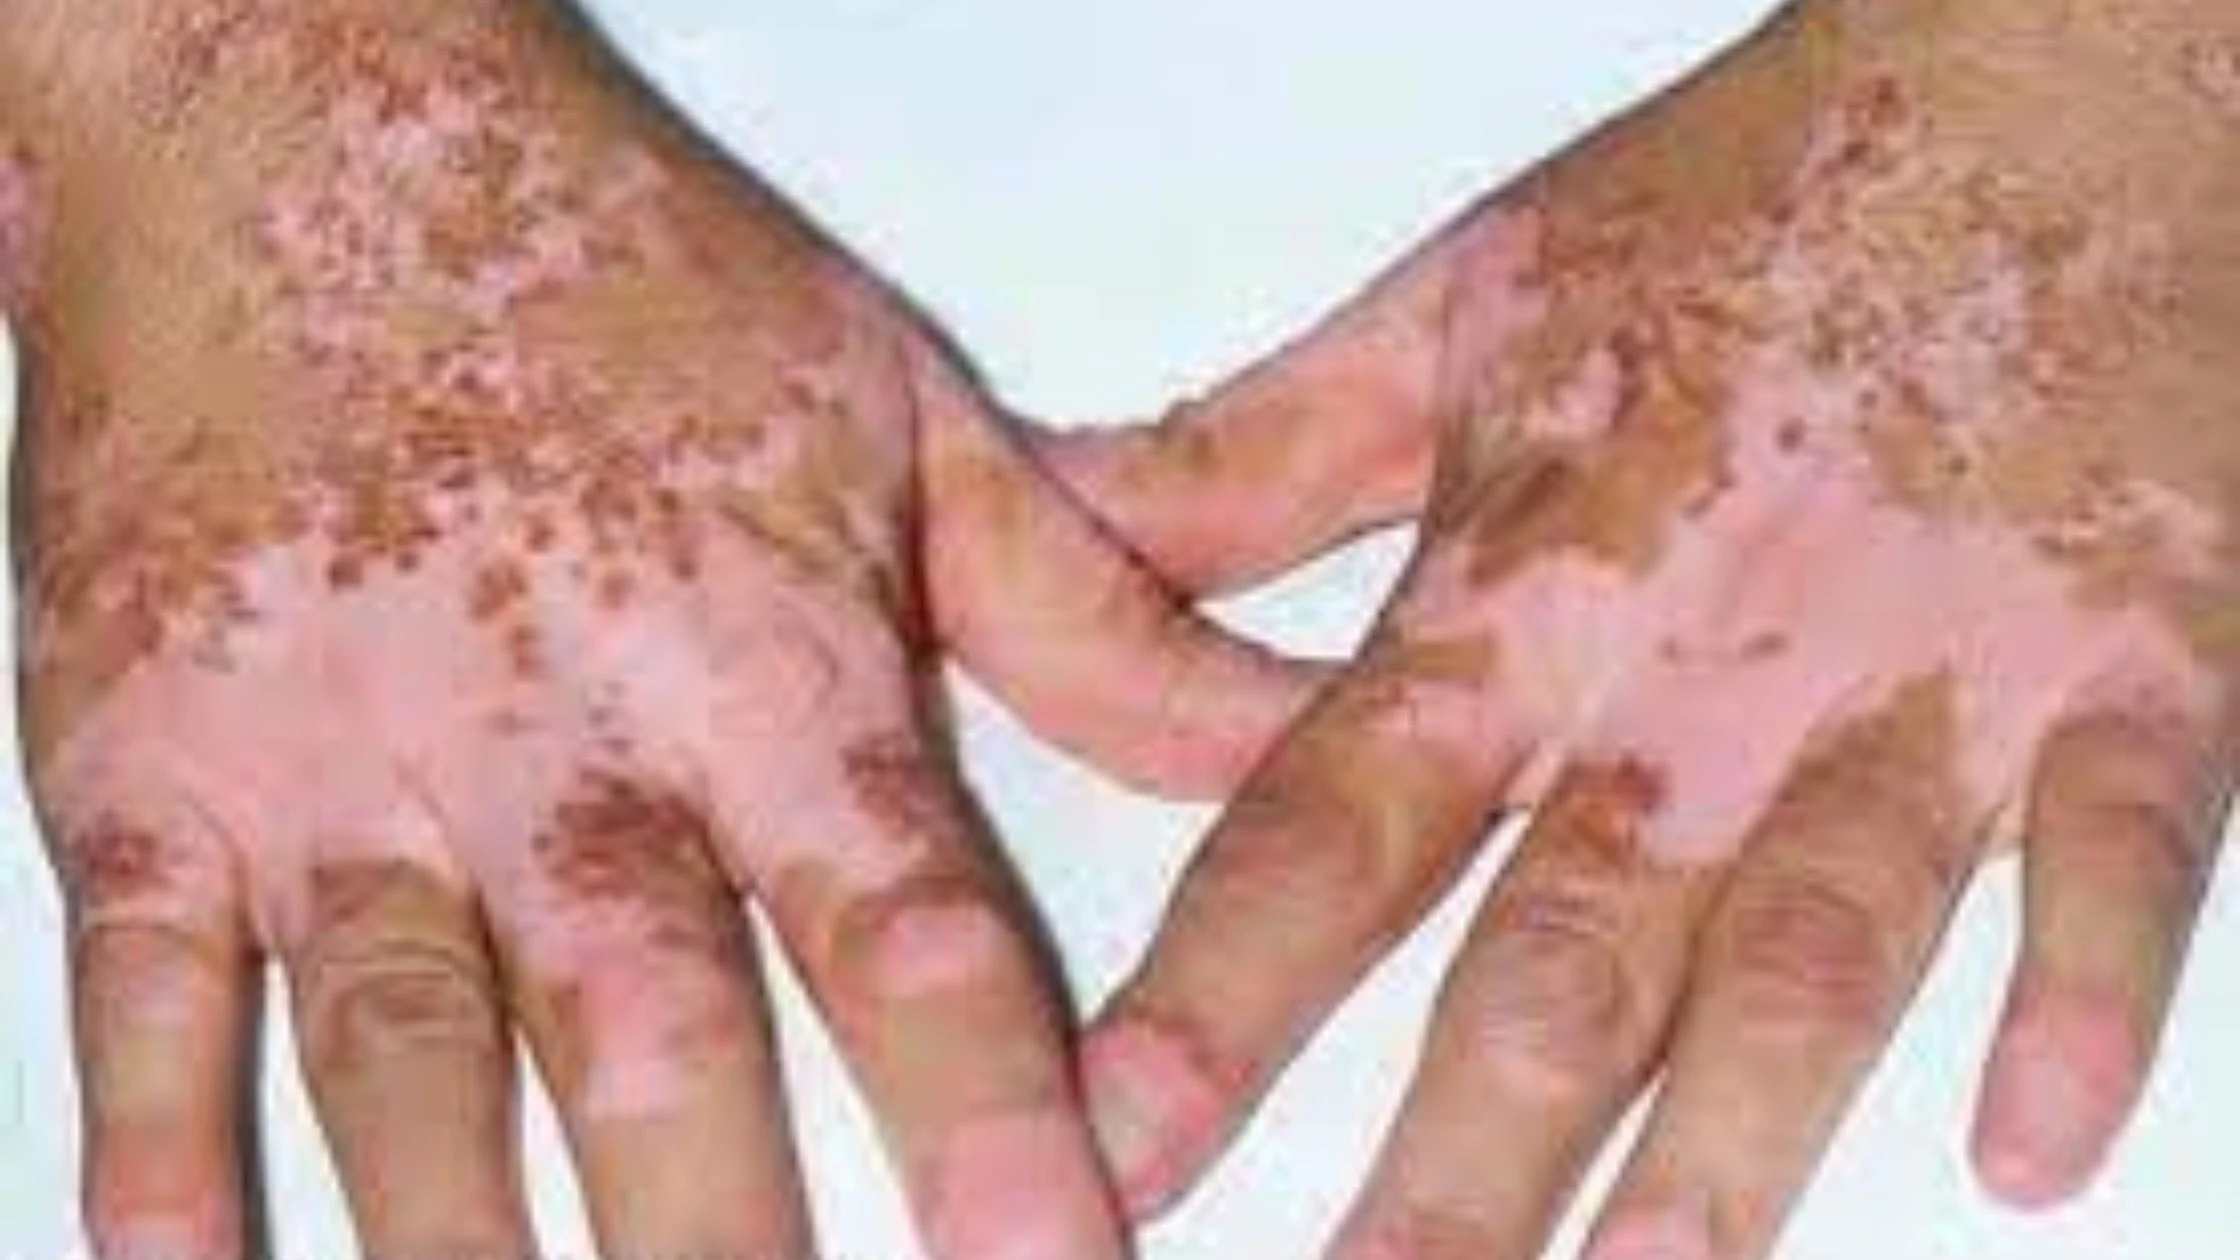 Vitiligo एक ऐसी स्थिति है जिसमें त्वचा कुछ क्षेत्रों में Pigmentation खो देती है, जिसके परिणामस्वरूप सफेद धब्बे हो जाते हैं। यह एक Autoimmune Disorder के कारण होता है और संक्रामक नहीं है।